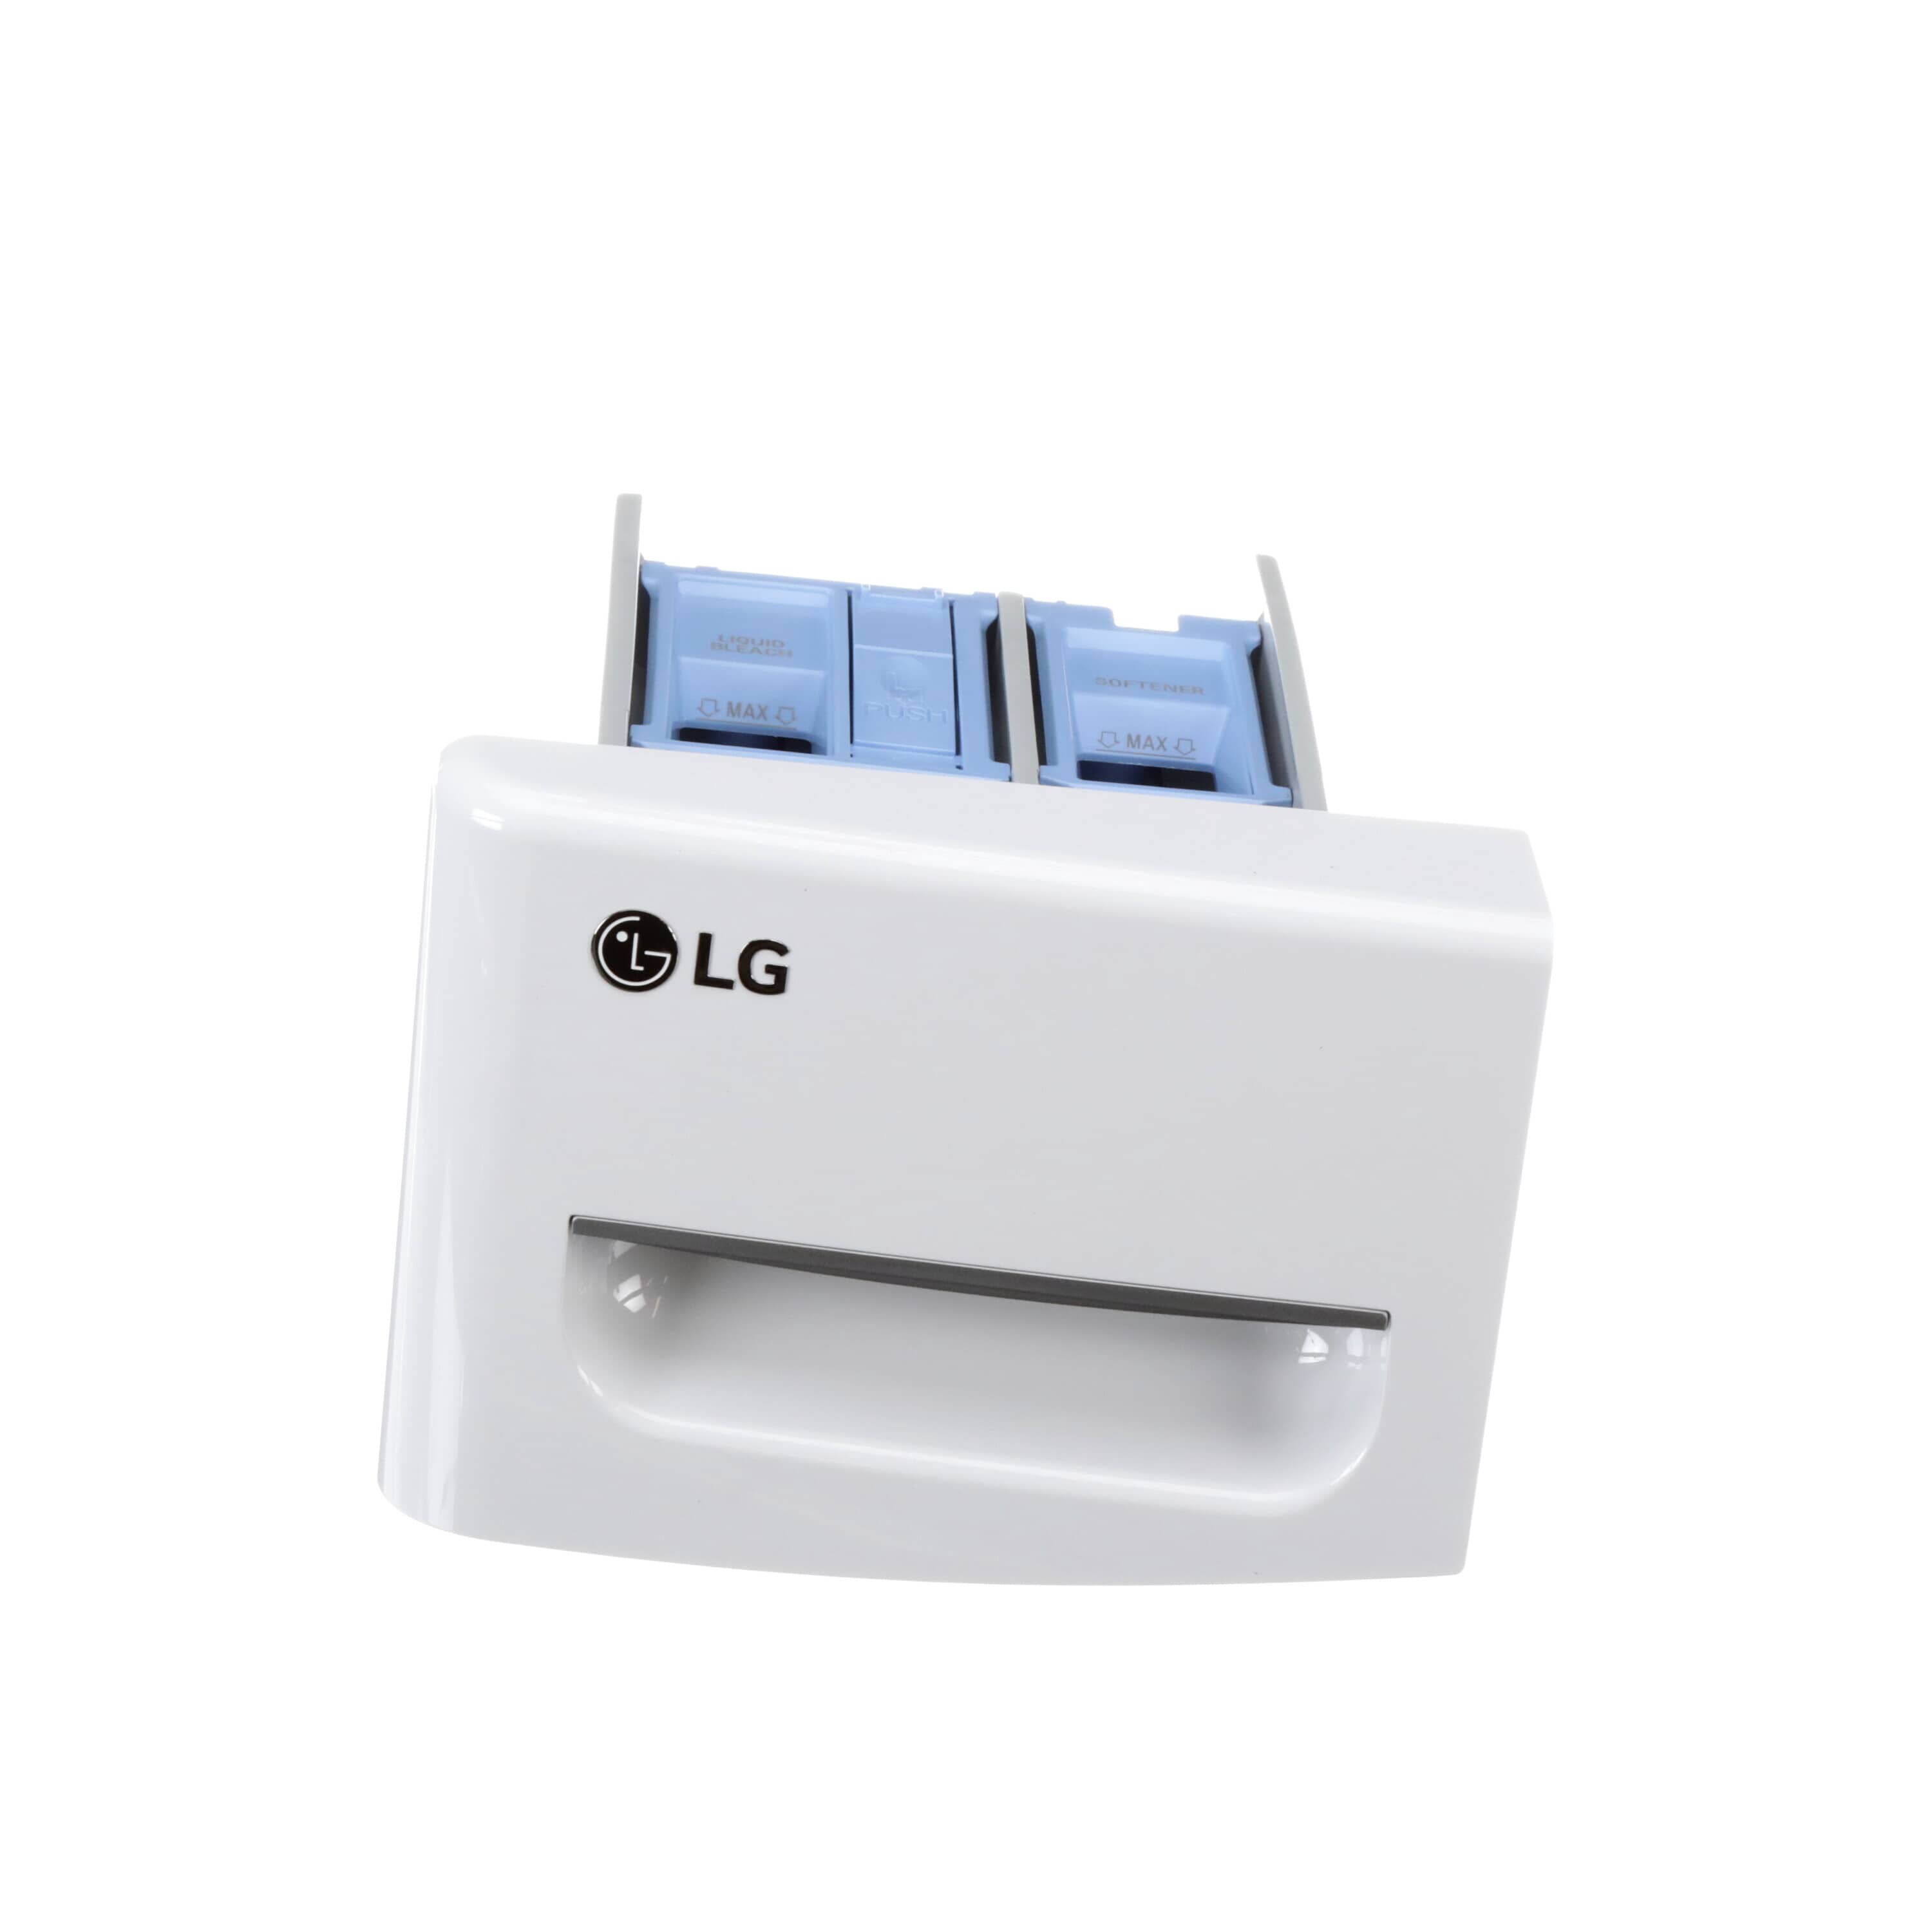 LG AGL73754101 Washer Dispenser Drawer Assembly (White)